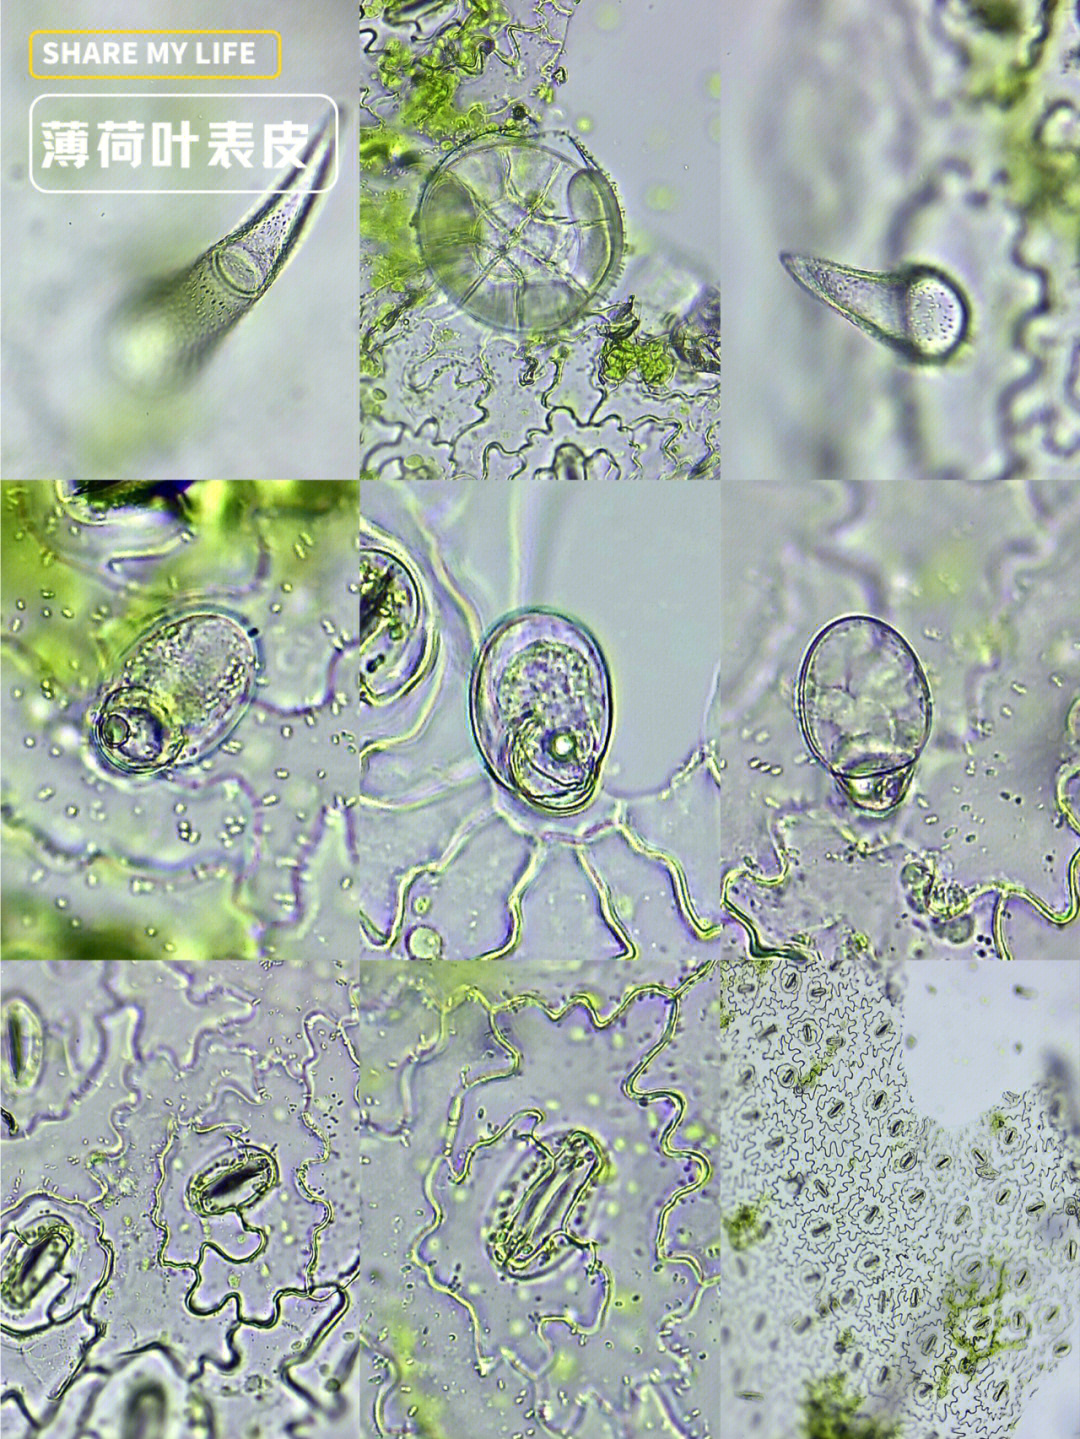 显微镜叶片细胞结构图图片